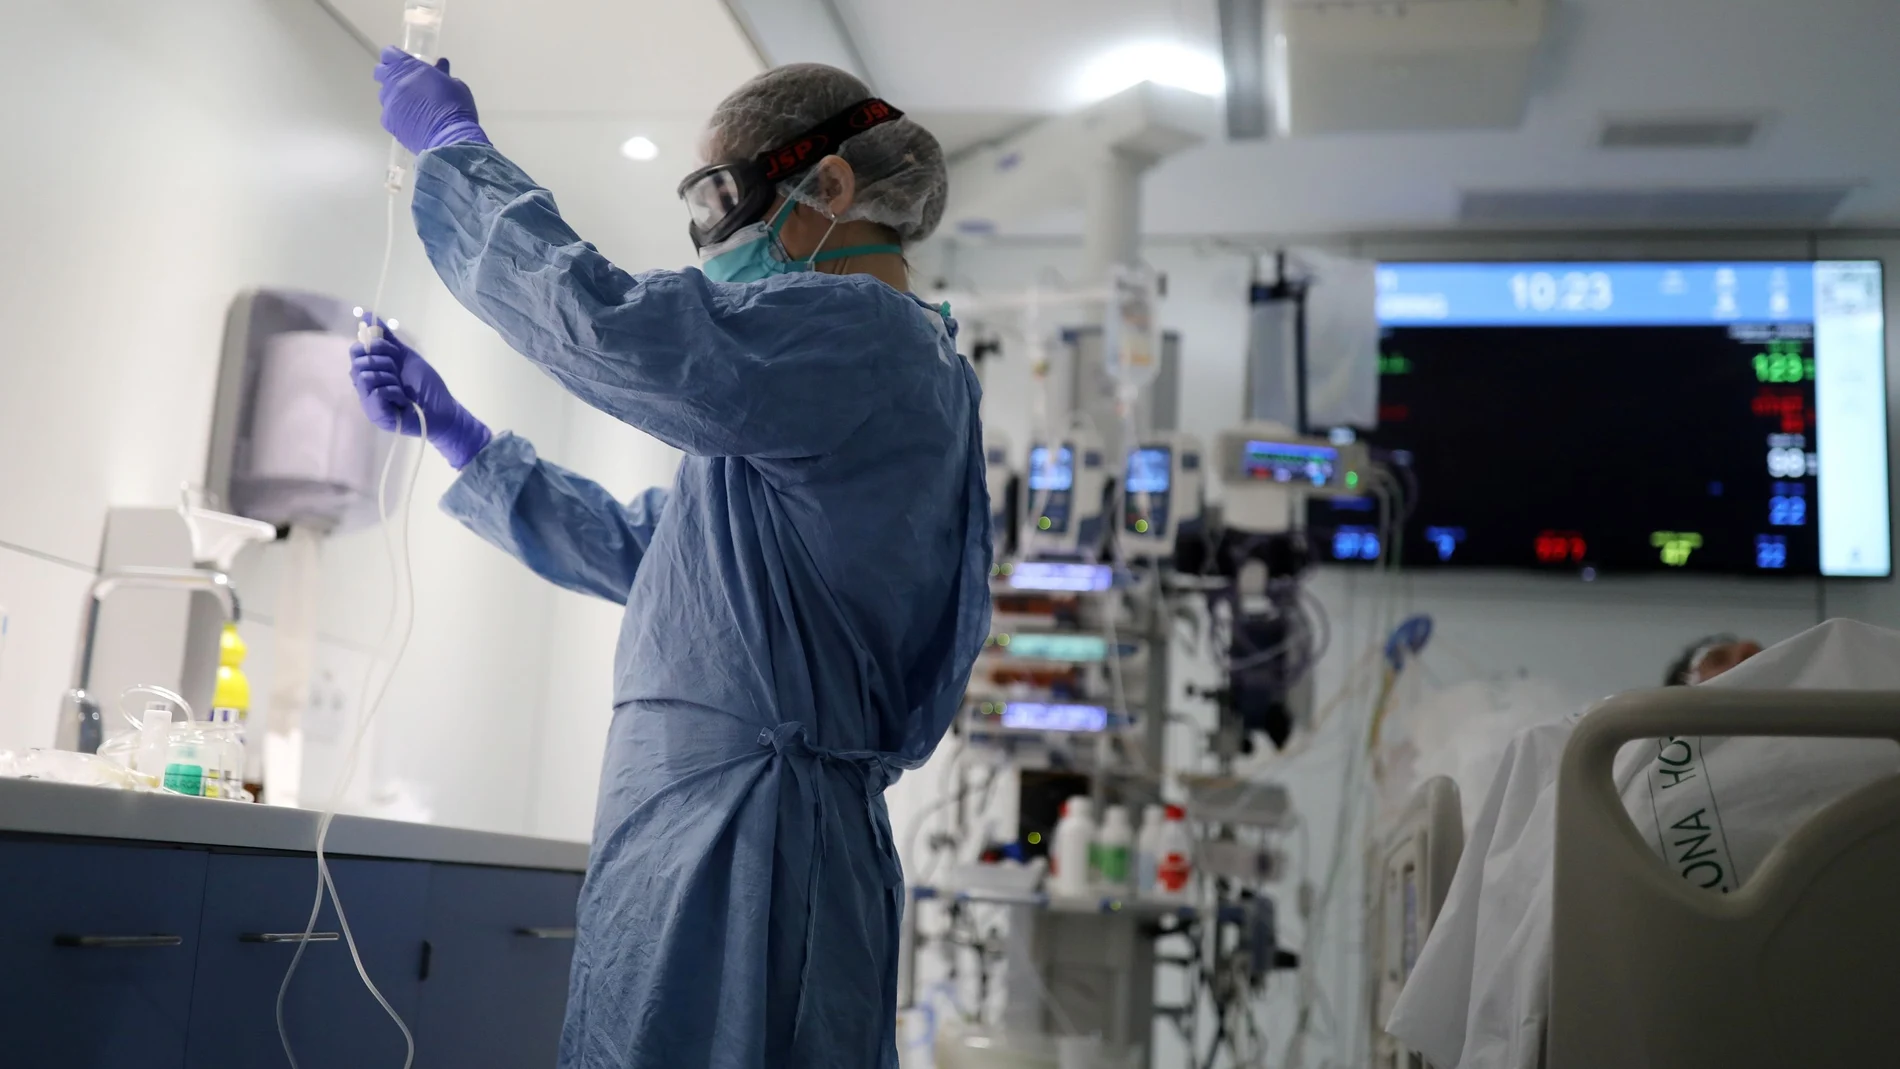 Un consorcio europeo de hospitales liderados por el Clínic-IDIBAPS con el apoyo de Cellnex Telecom impulsa un proyecto de inmunoterapia celular para hacer frente a la COVID-19. REUTERS/Nacho Doce